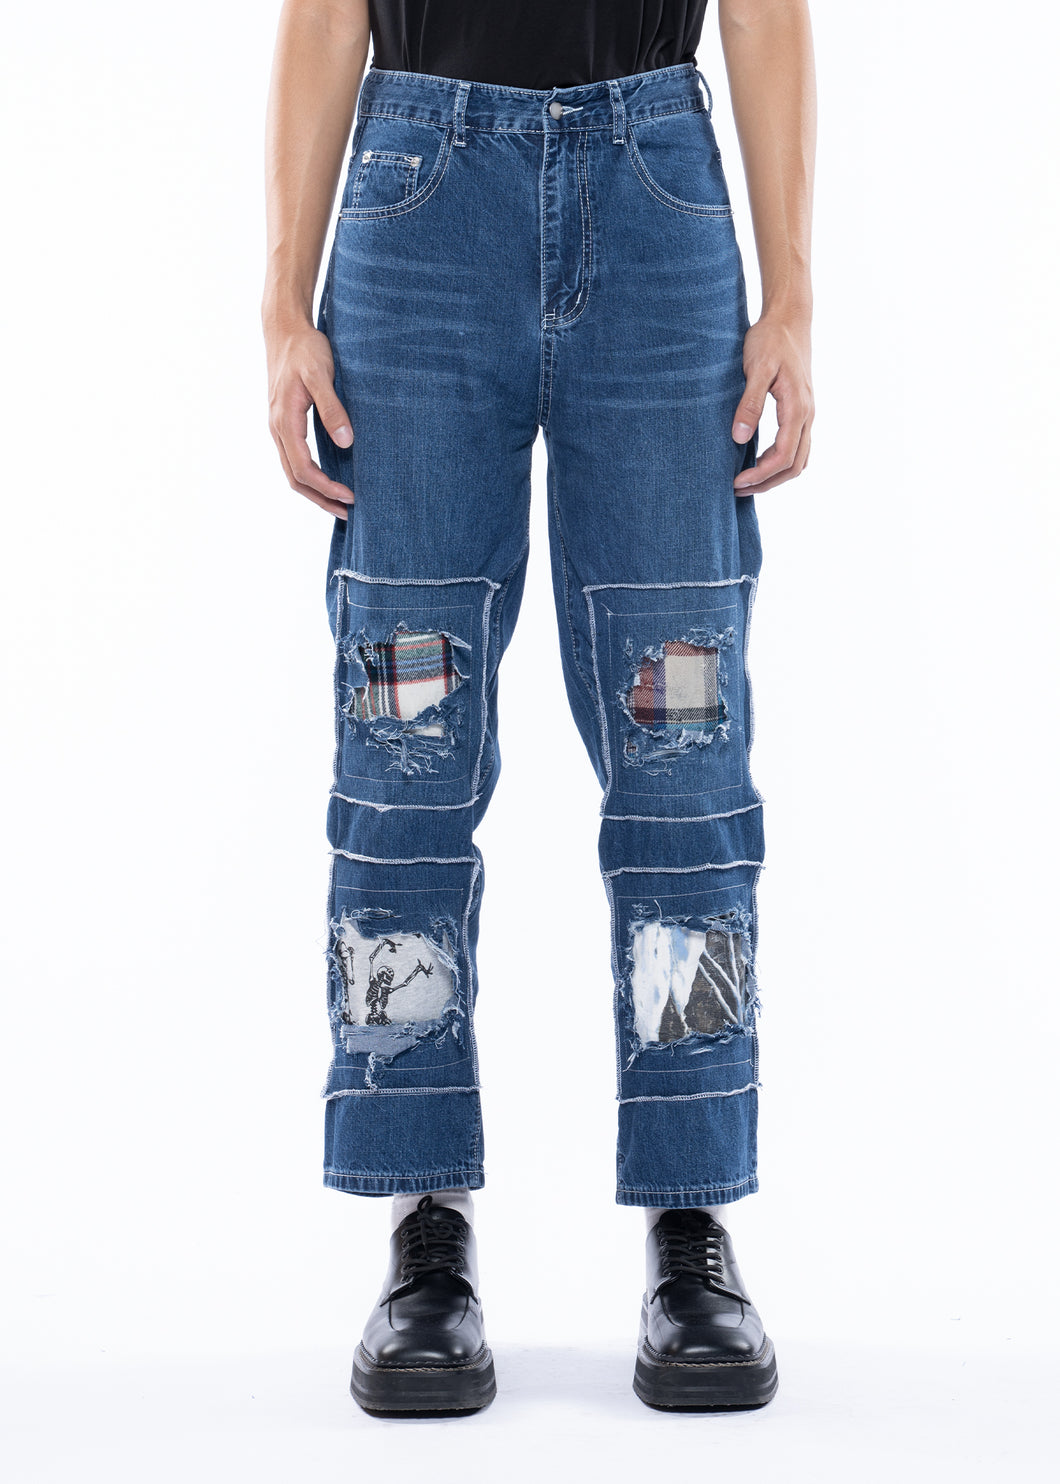 RANDOMEFFECT Square Jeans